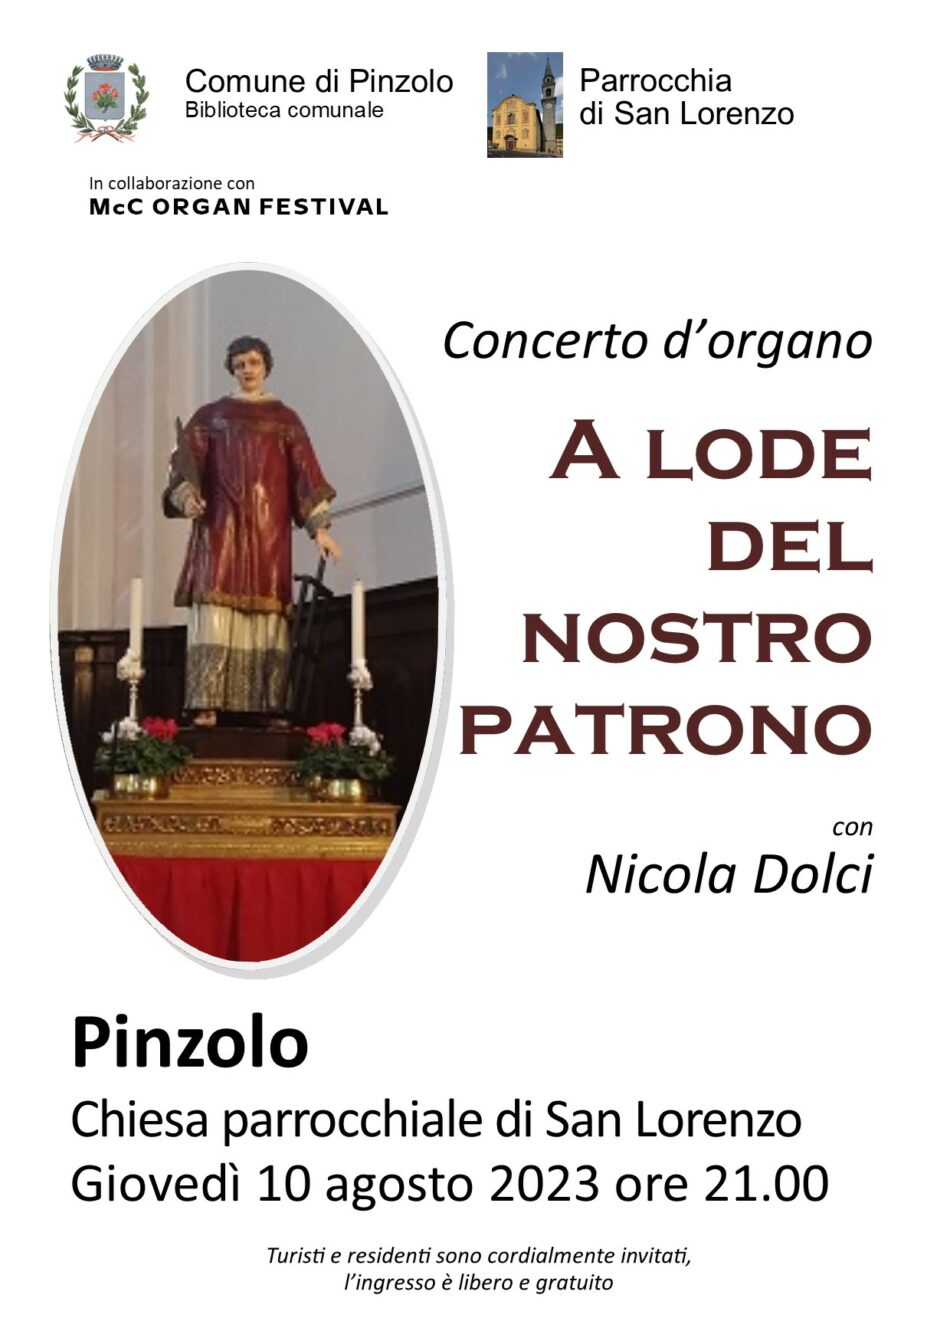 Giovedì 10 agosto ore 21 Chiesa di Pinzolo: “A lode del nostro patrono” concerto d’organo con Nicola Dolci